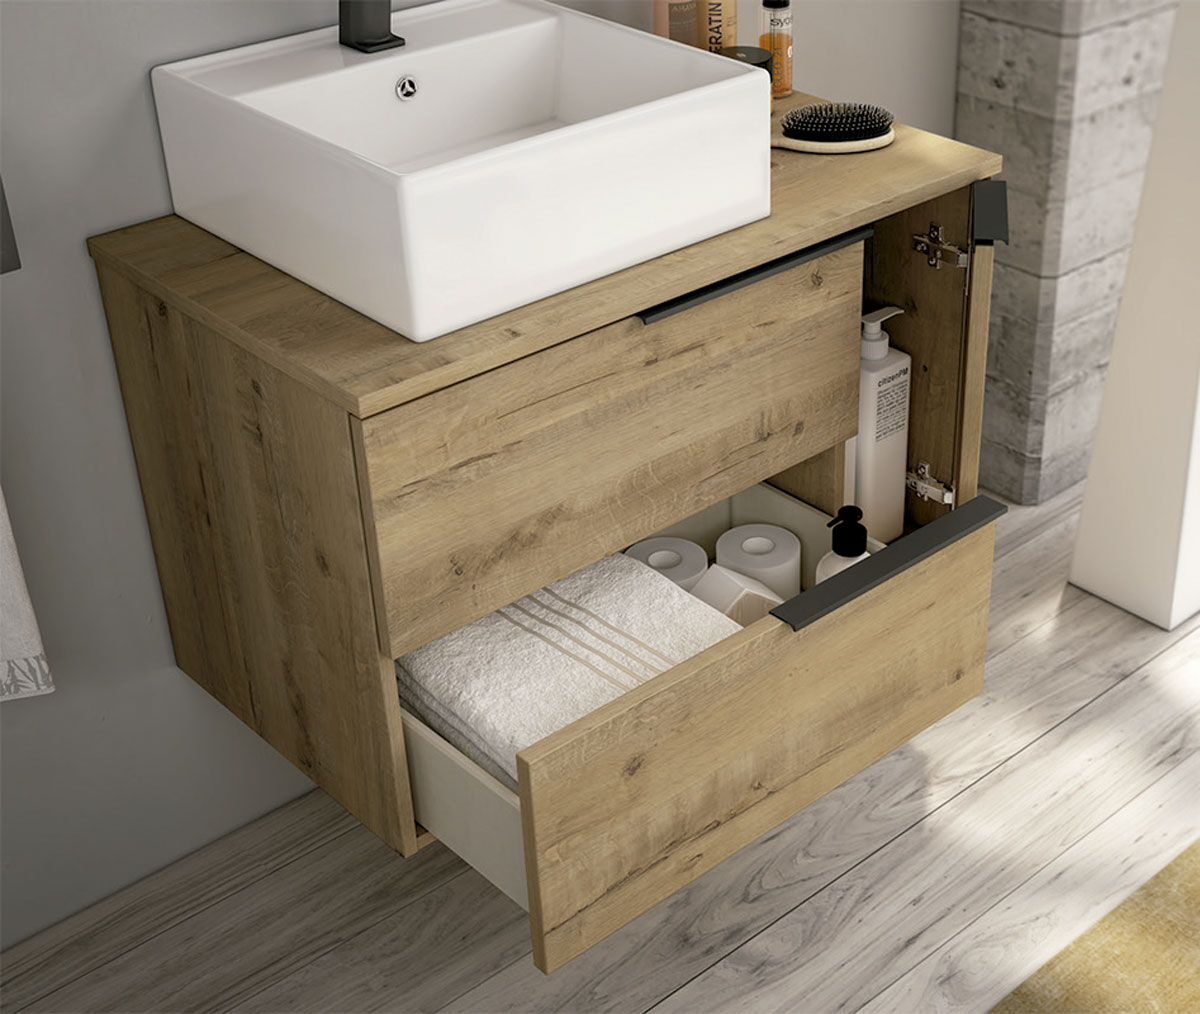 mueble de baño suspendido color marrón claro